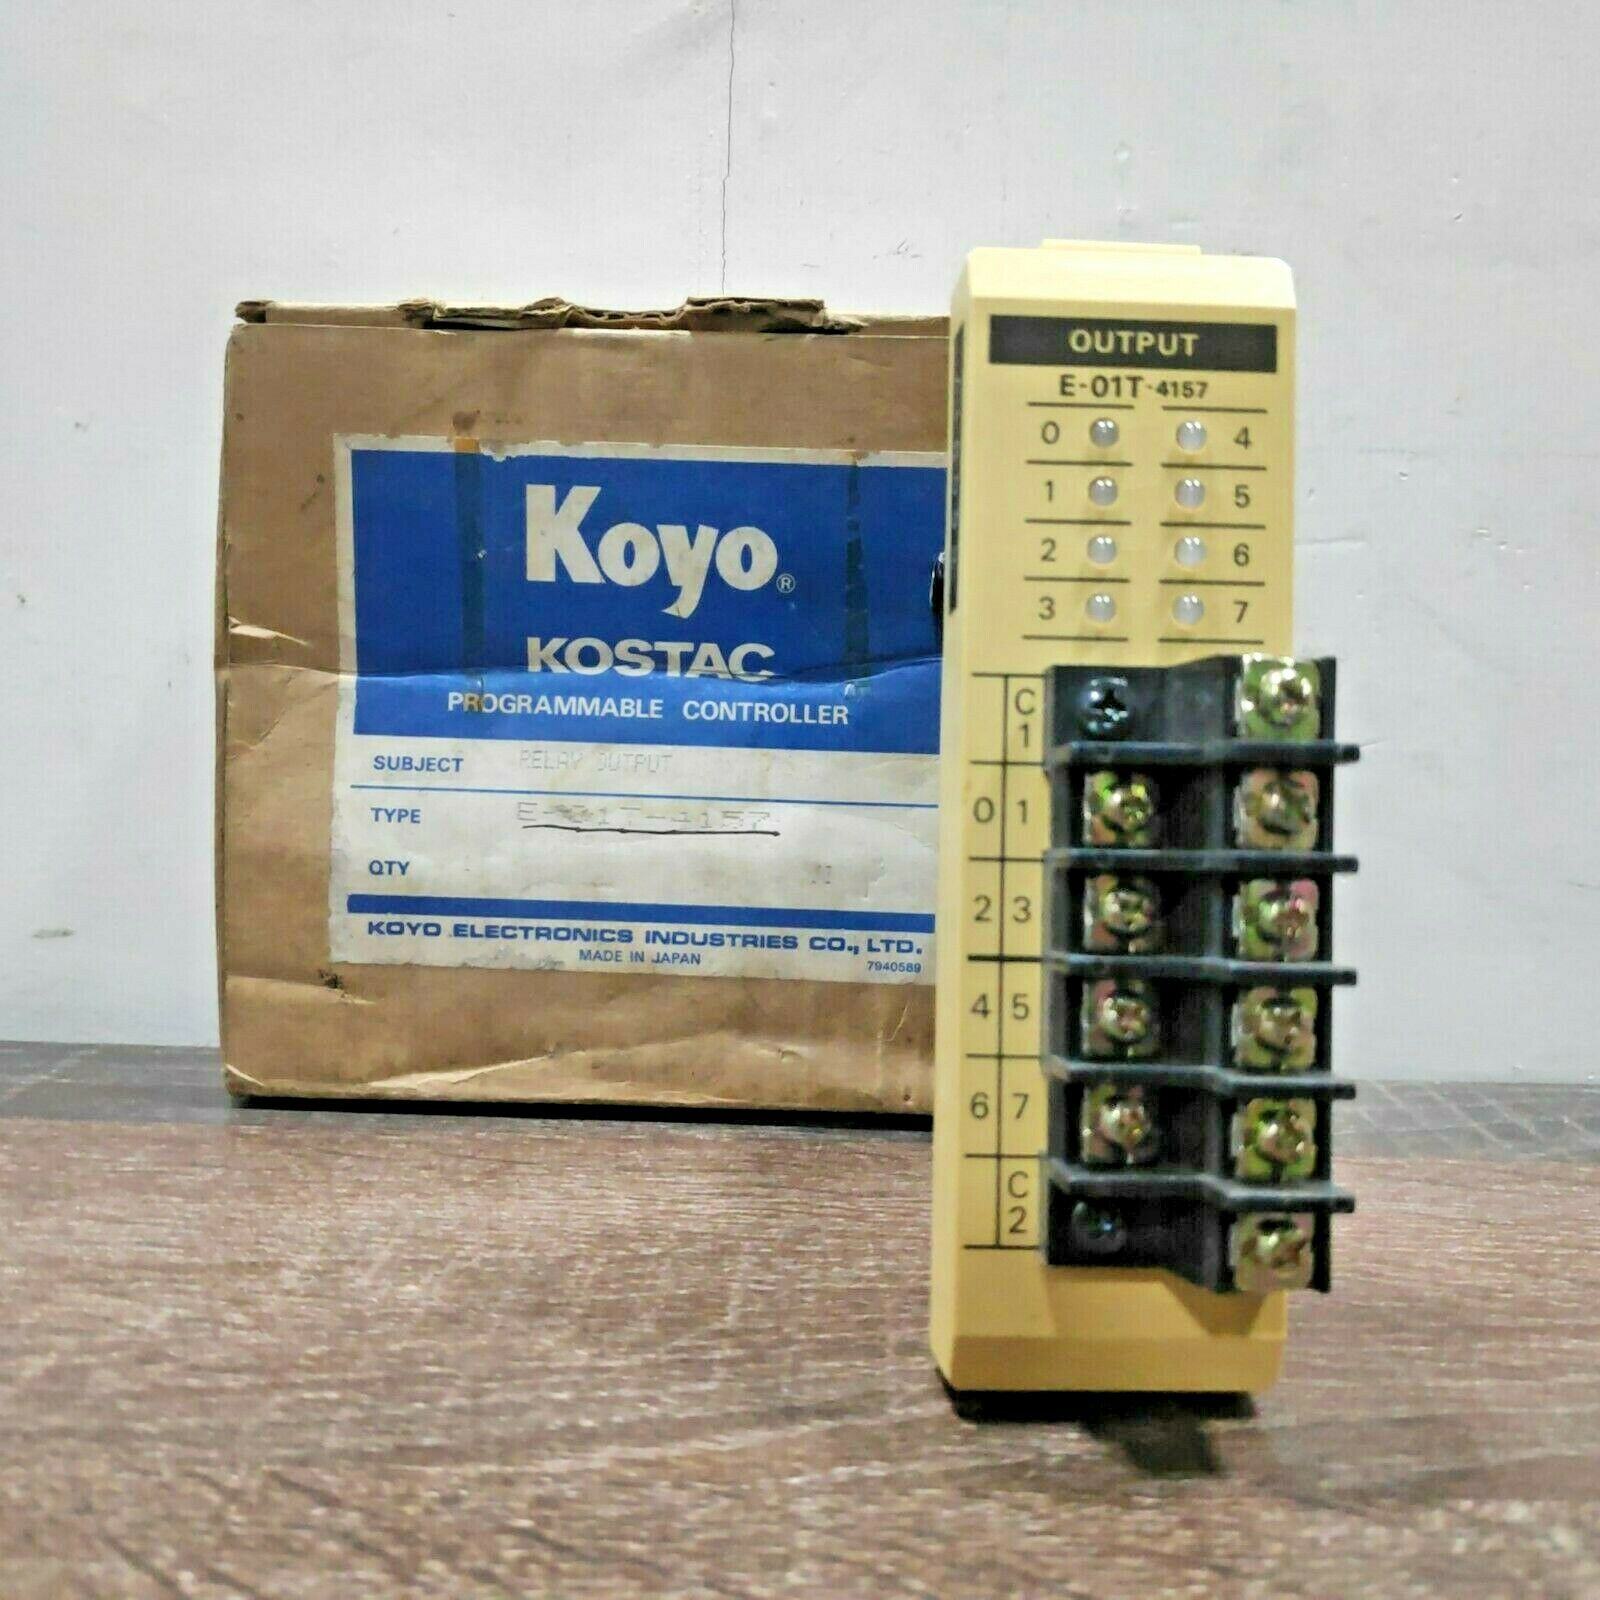 KOYO E-01T-4157 RELAY OUTPUT PROGRAMMABLE CONTROLLER